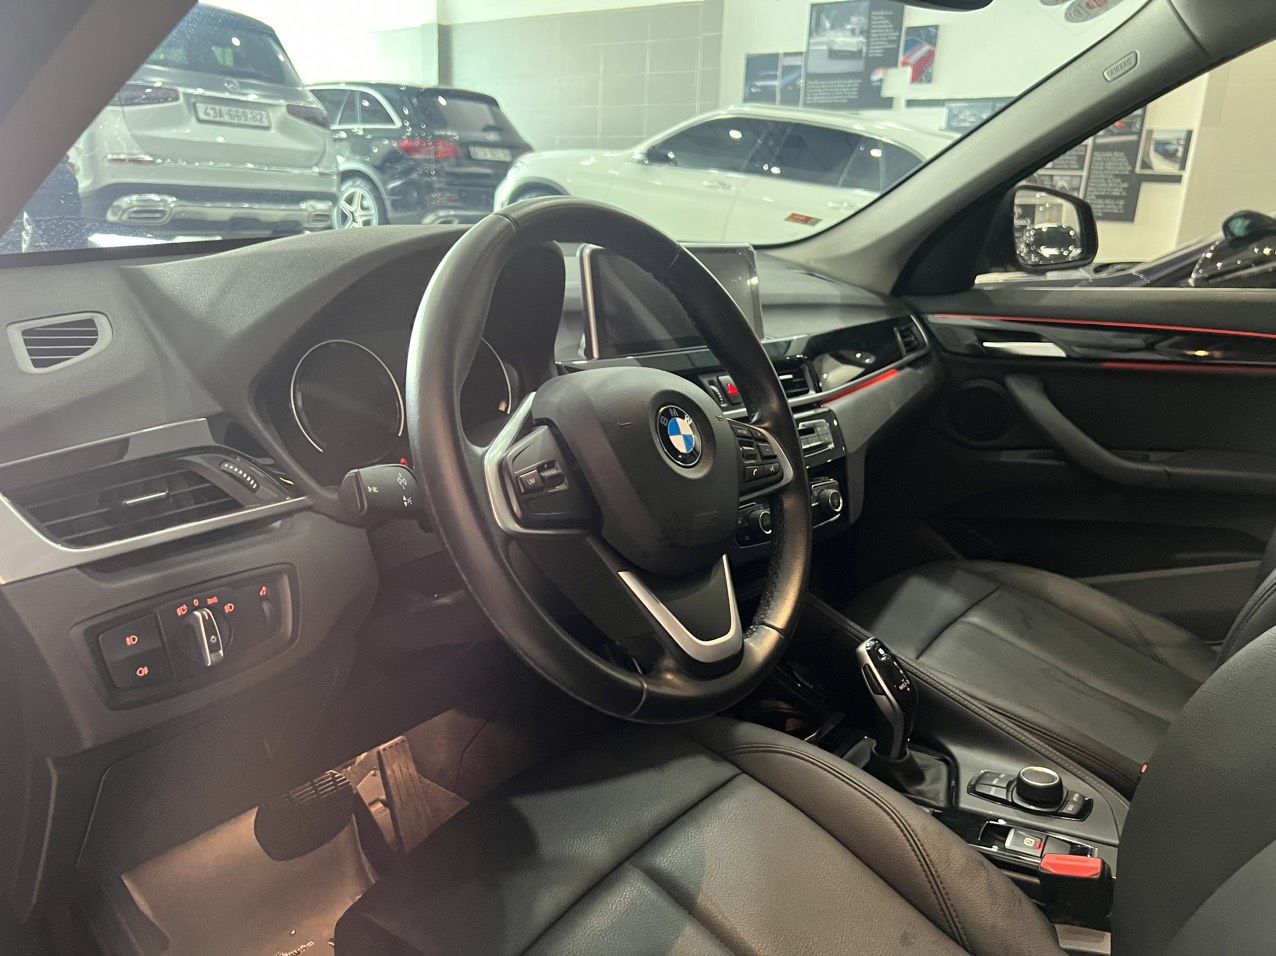 BMW X1 2019 - Model 2019 (thiết kế trẻ trung)